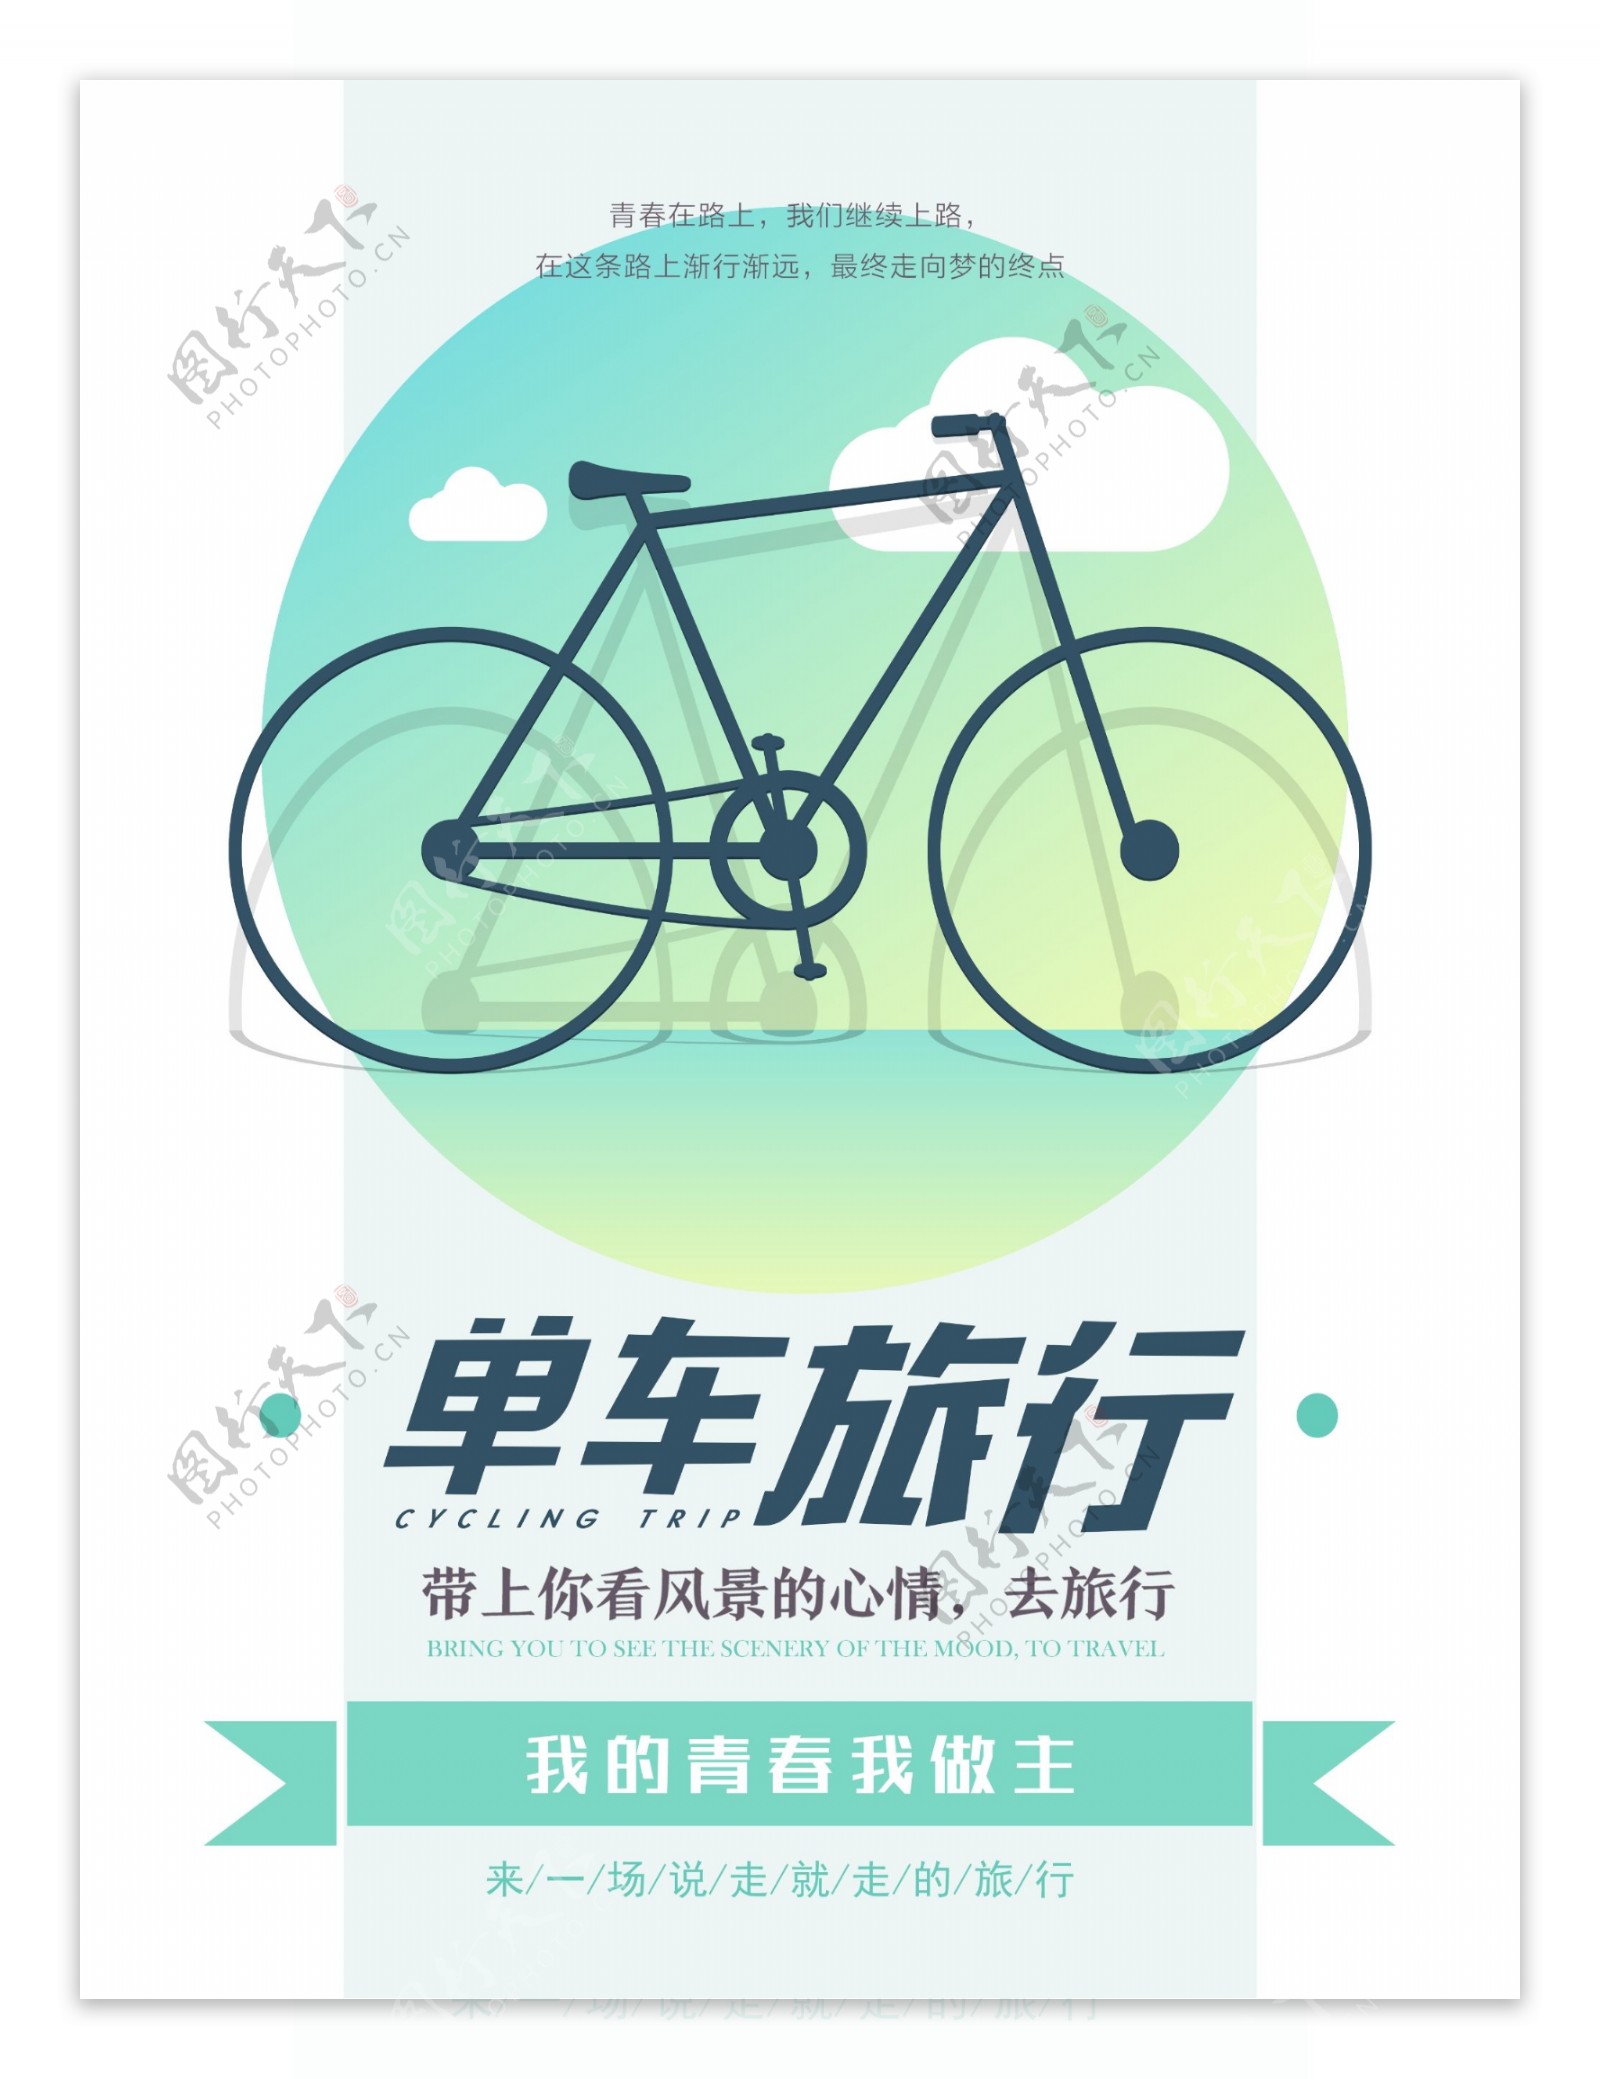 单车旅行自驾游宣传海报